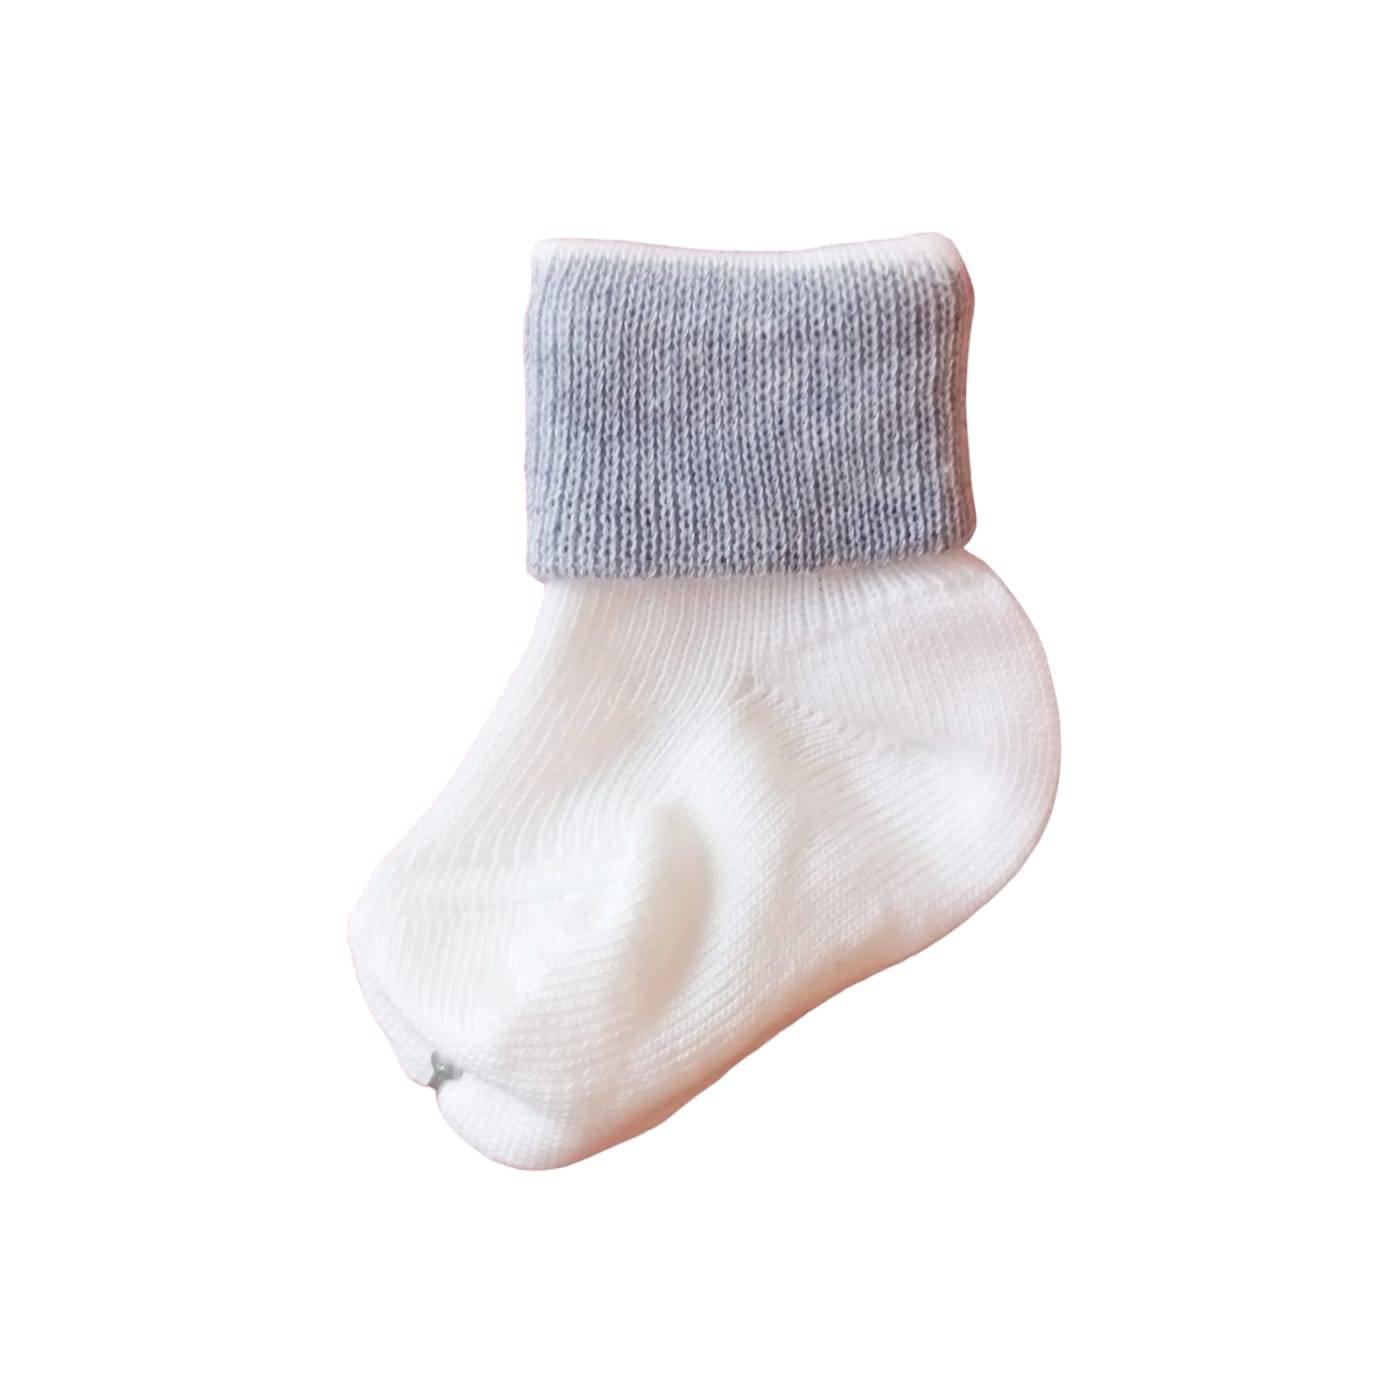 Chaussettes bébé en coton chaud crème et gris clair taille 000 0/3